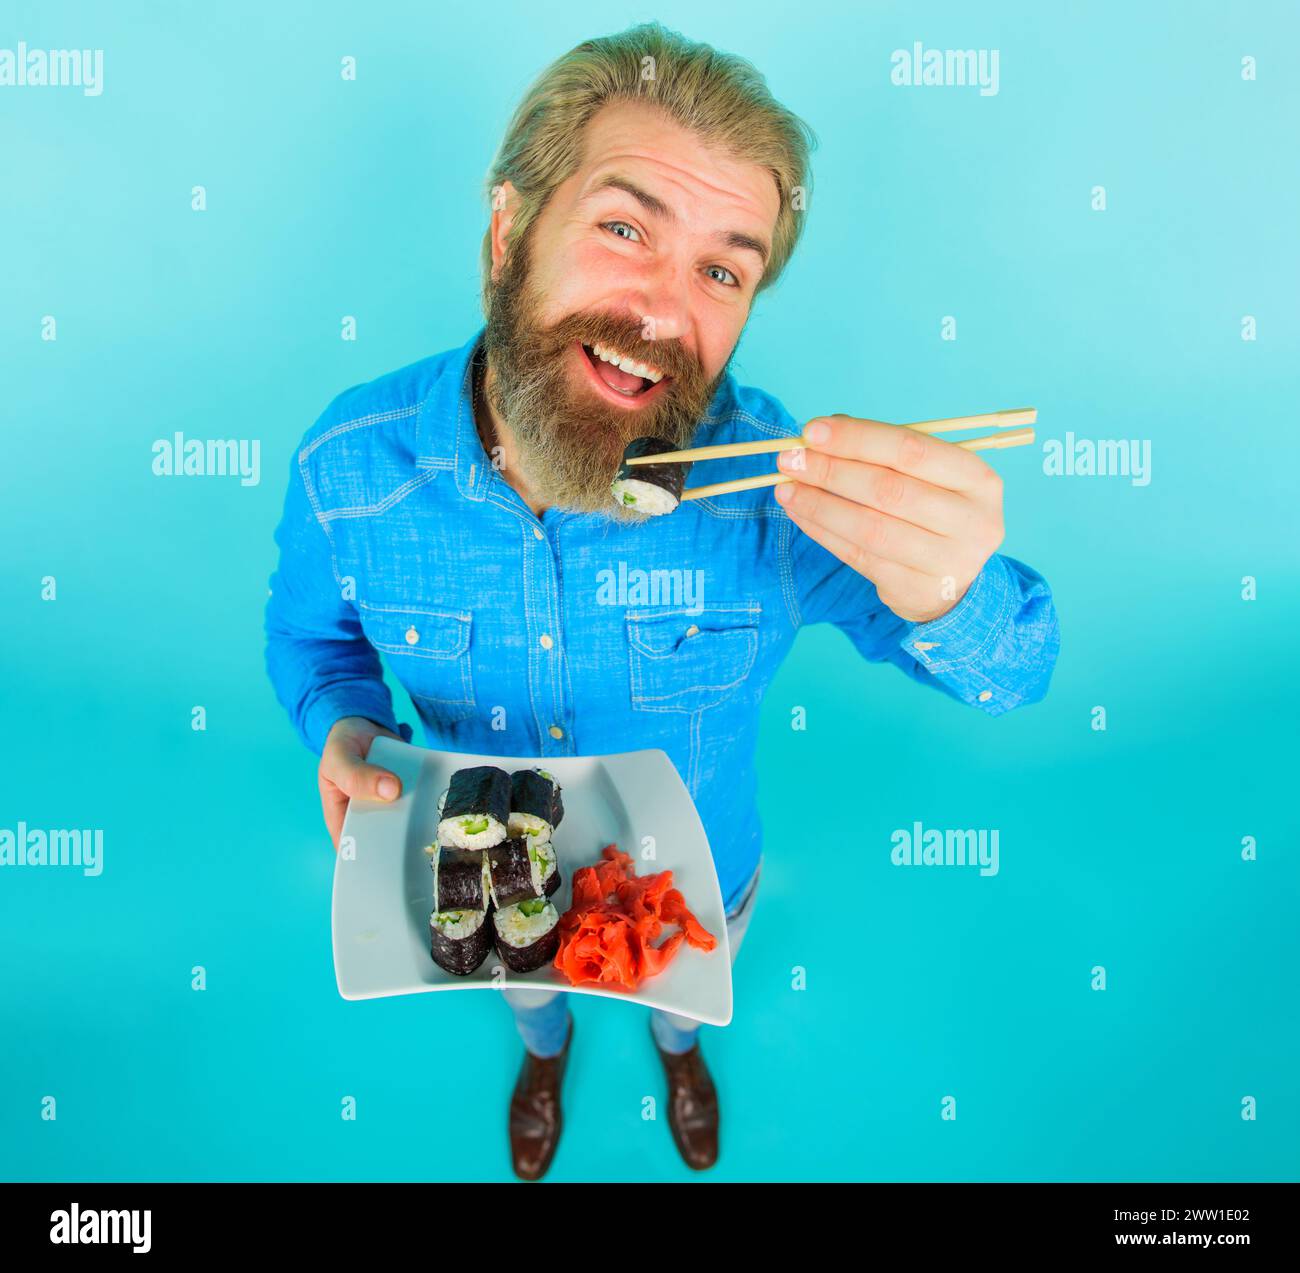 Consegna di sushi. Cibo asiatico. Uomo sorridente con barba che mangia un gustoso sushi roll con bacchette. Cibo giapponese. Bell'uomo in camicia in denim con piatto Foto Stock